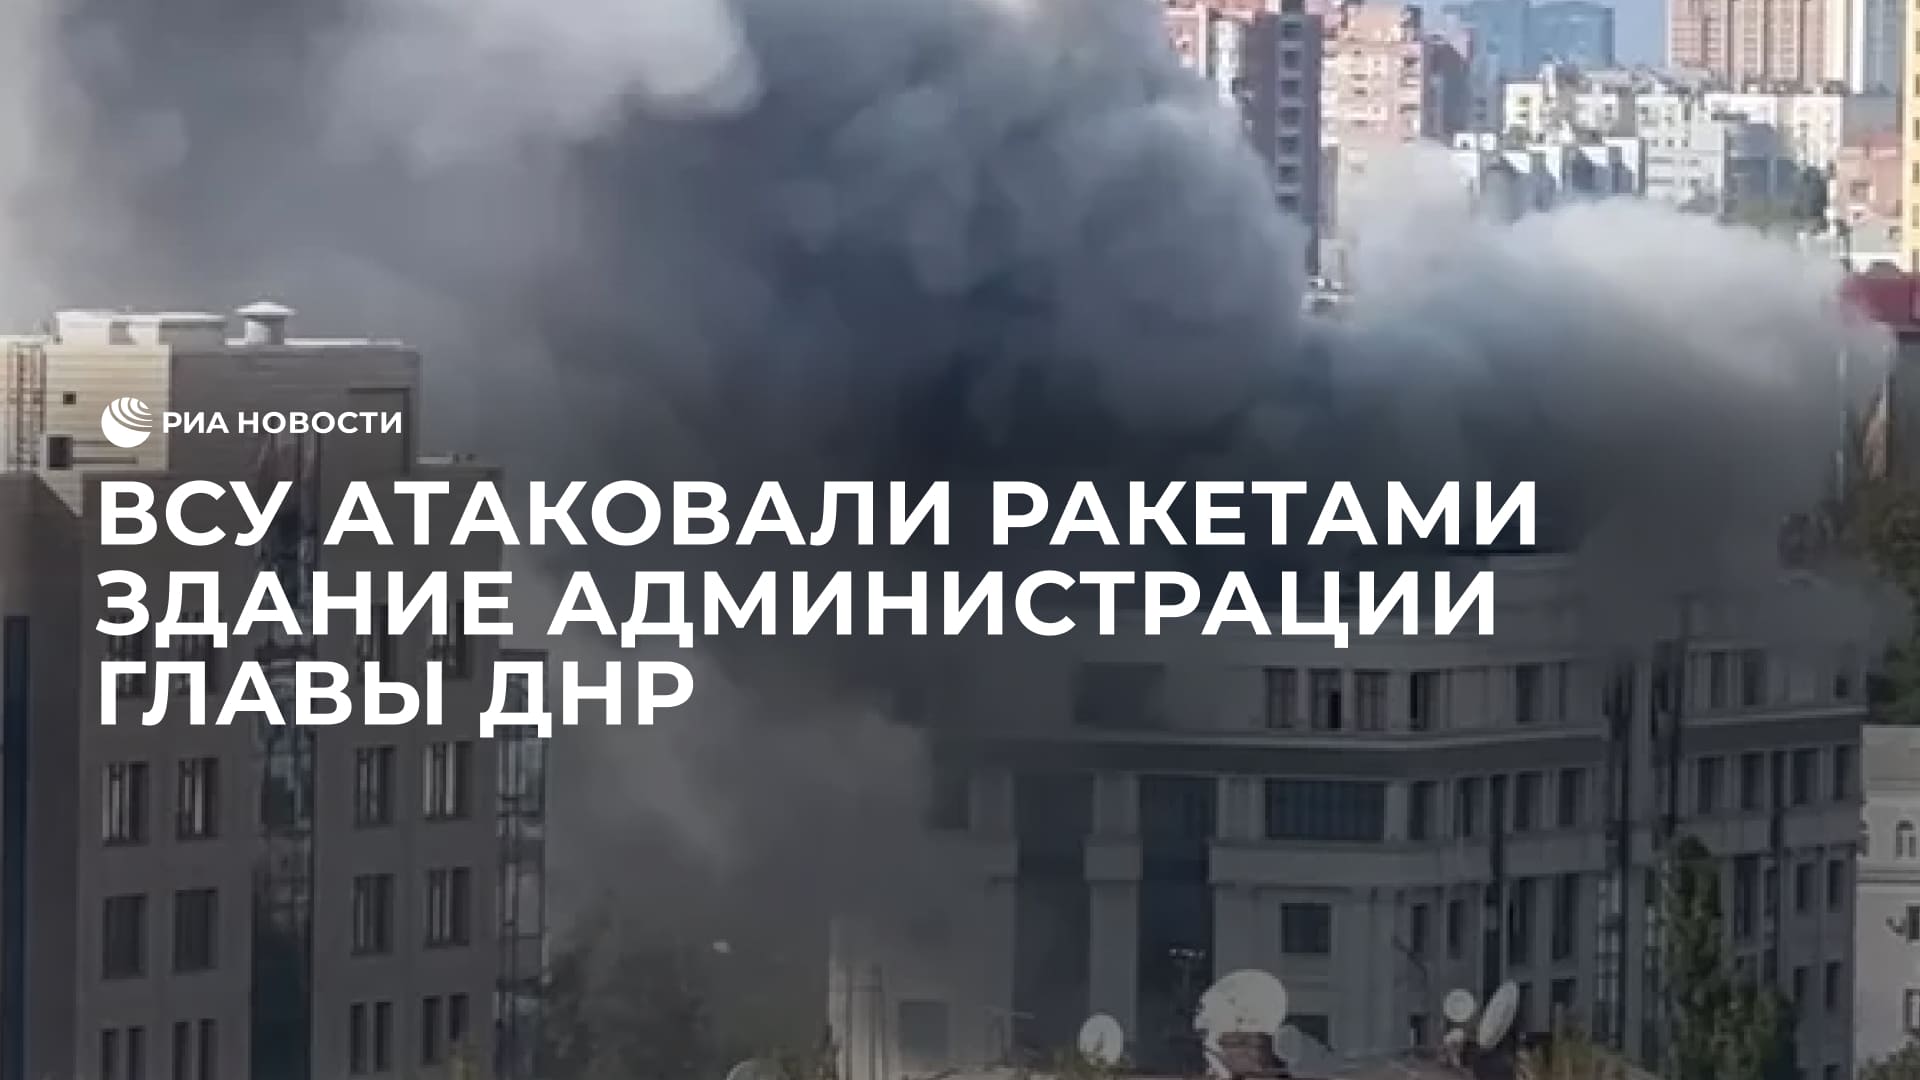 ВСУ атаковали ракетами здание администрации главы ДНР